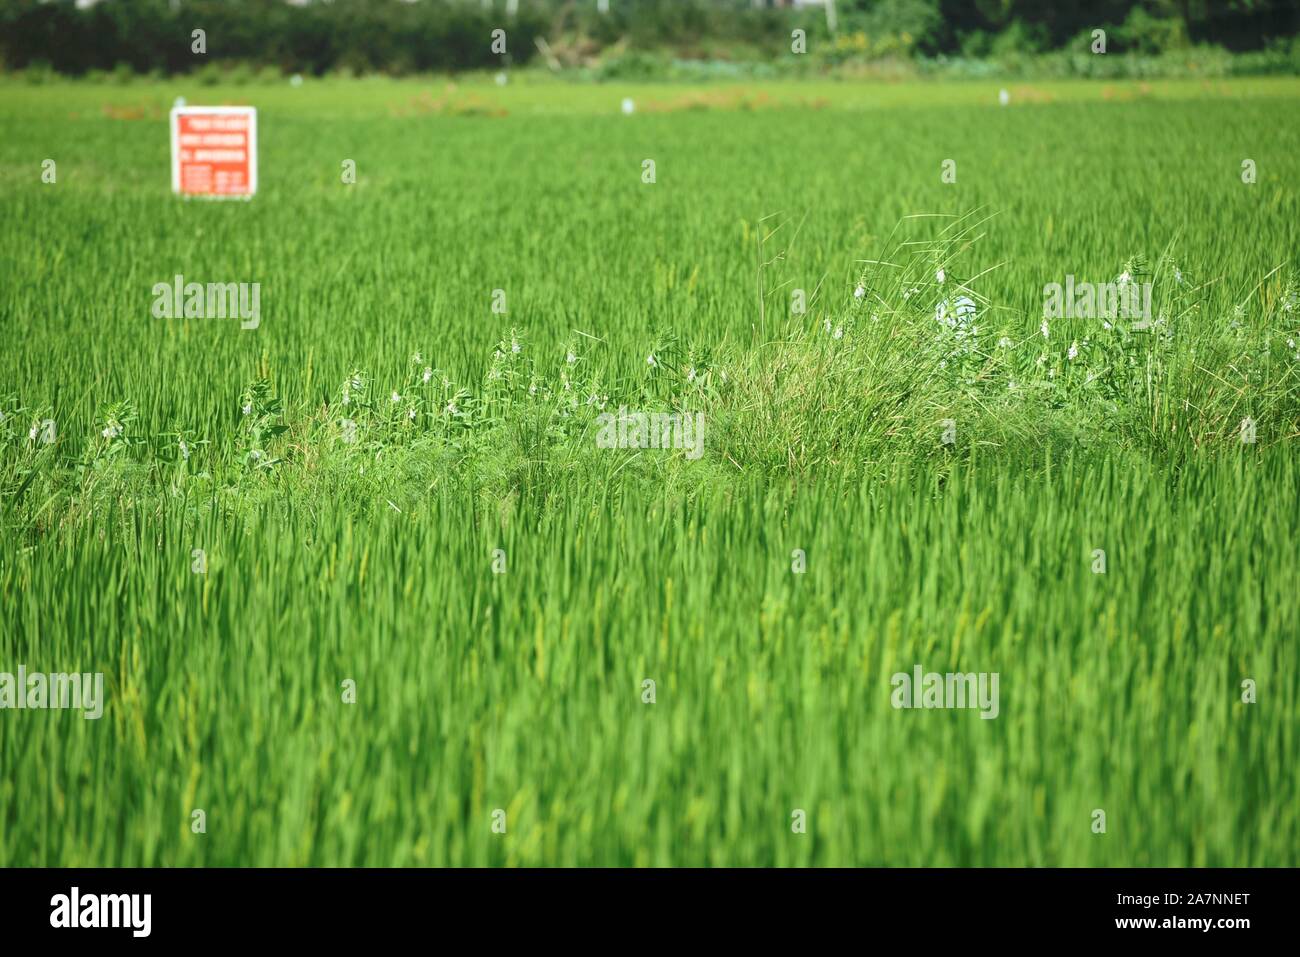 Un fermier chinois biotique des pulvérisations de pesticides pour les cultures avec les pulvérisateurs sur les rizières dans le district de Xiaoshan Hangzhou, ville, est de la Chine Zhejiang de bauvin Banque D'Images